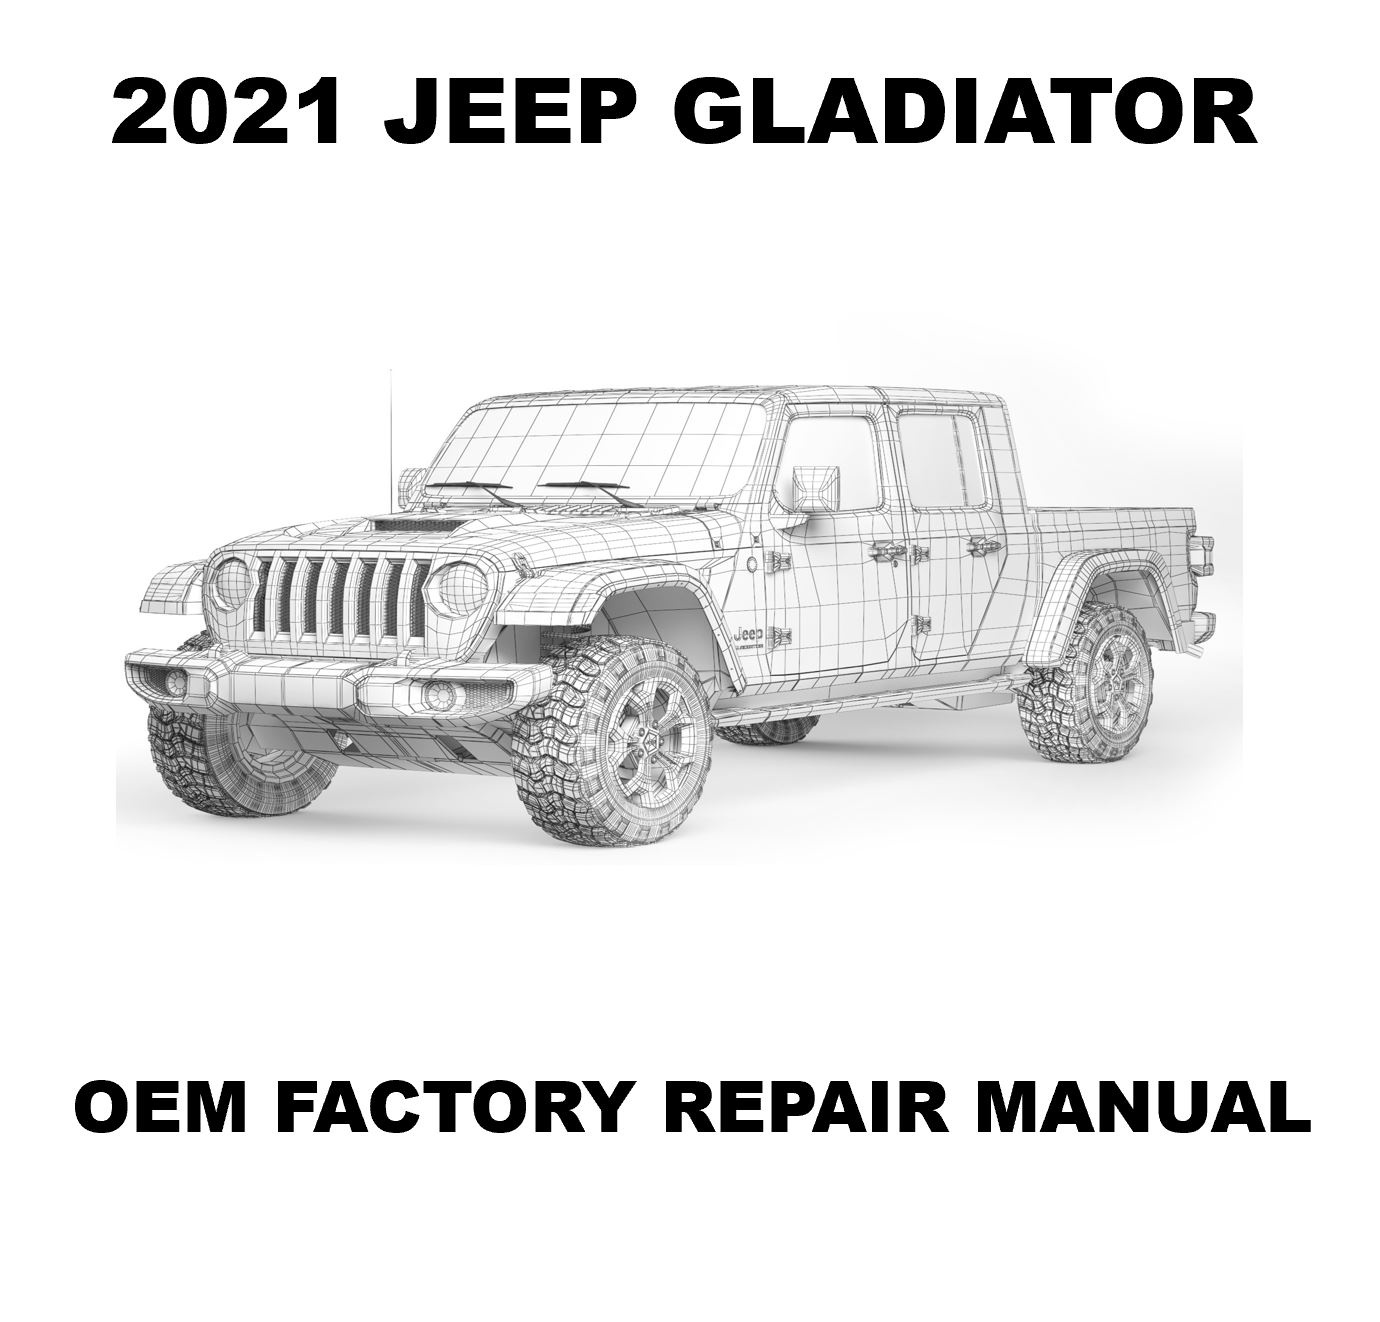 2021 Jeep Gladiator repair manualOEM Factory Repair Manual